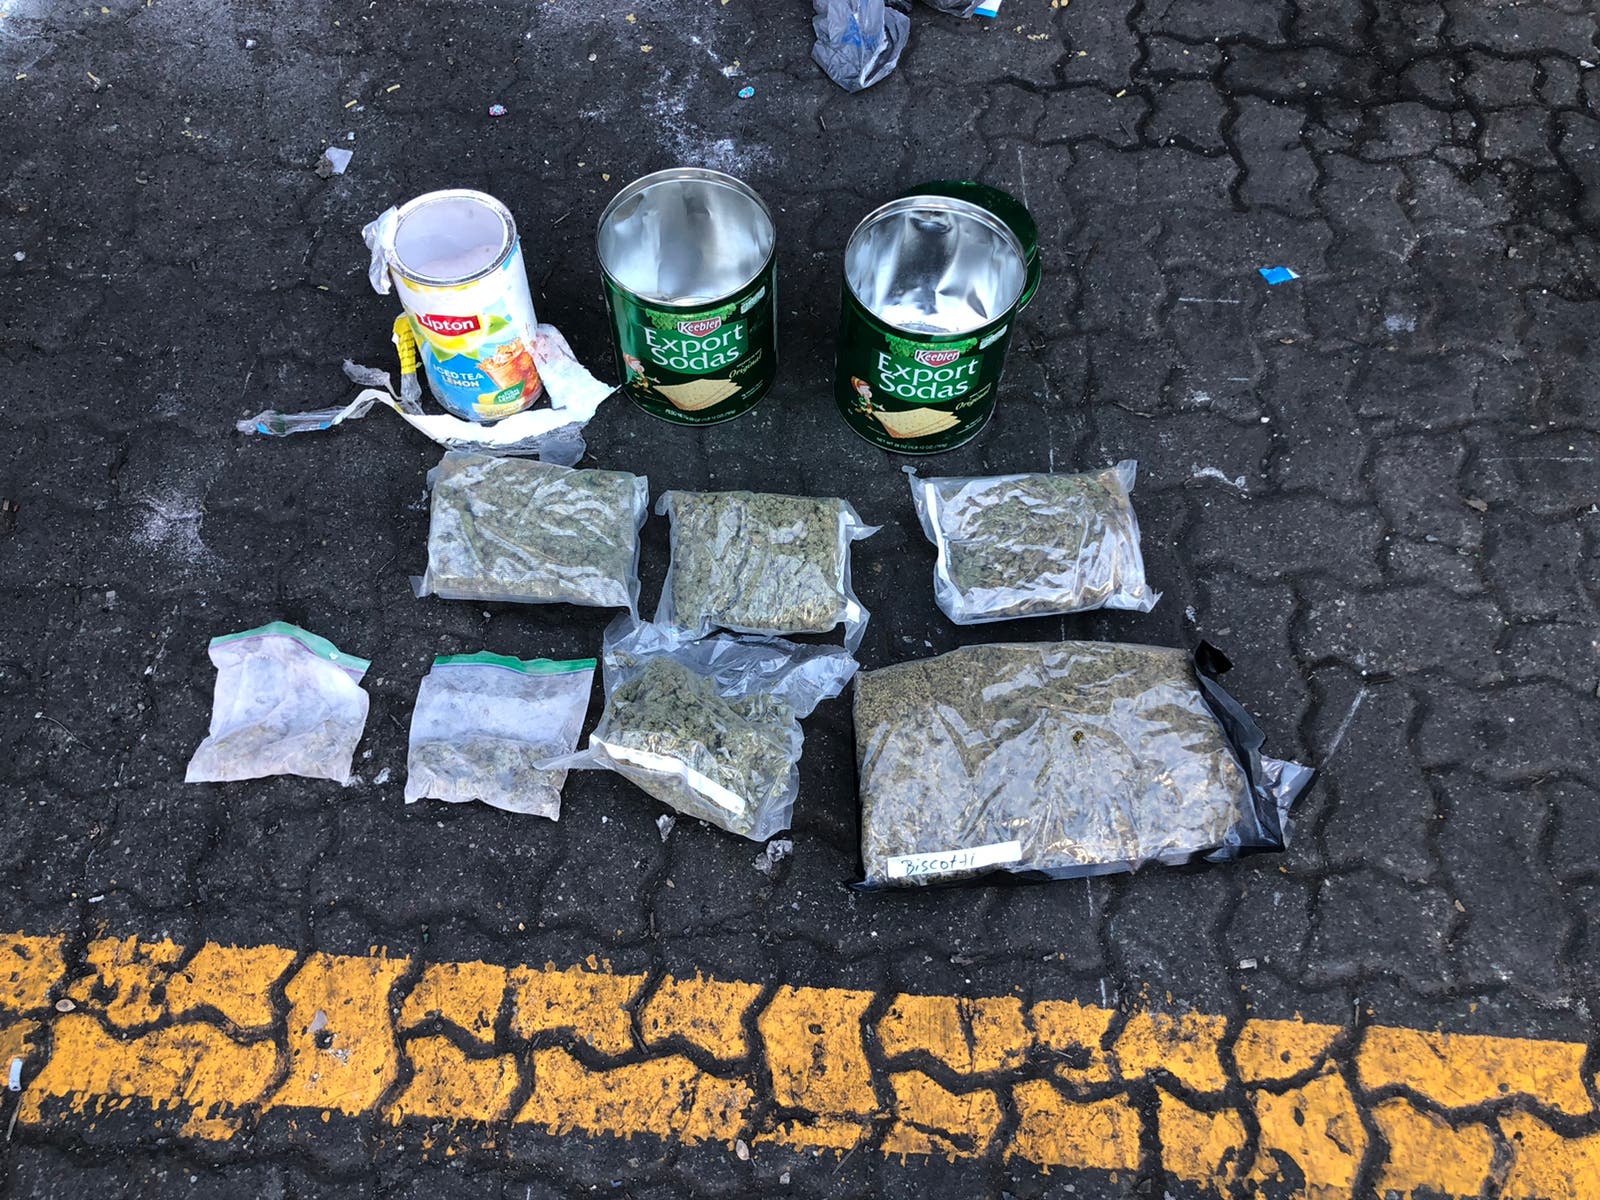 Ocupan siete paquetes de marihuana camuflados en latas de té y galletas